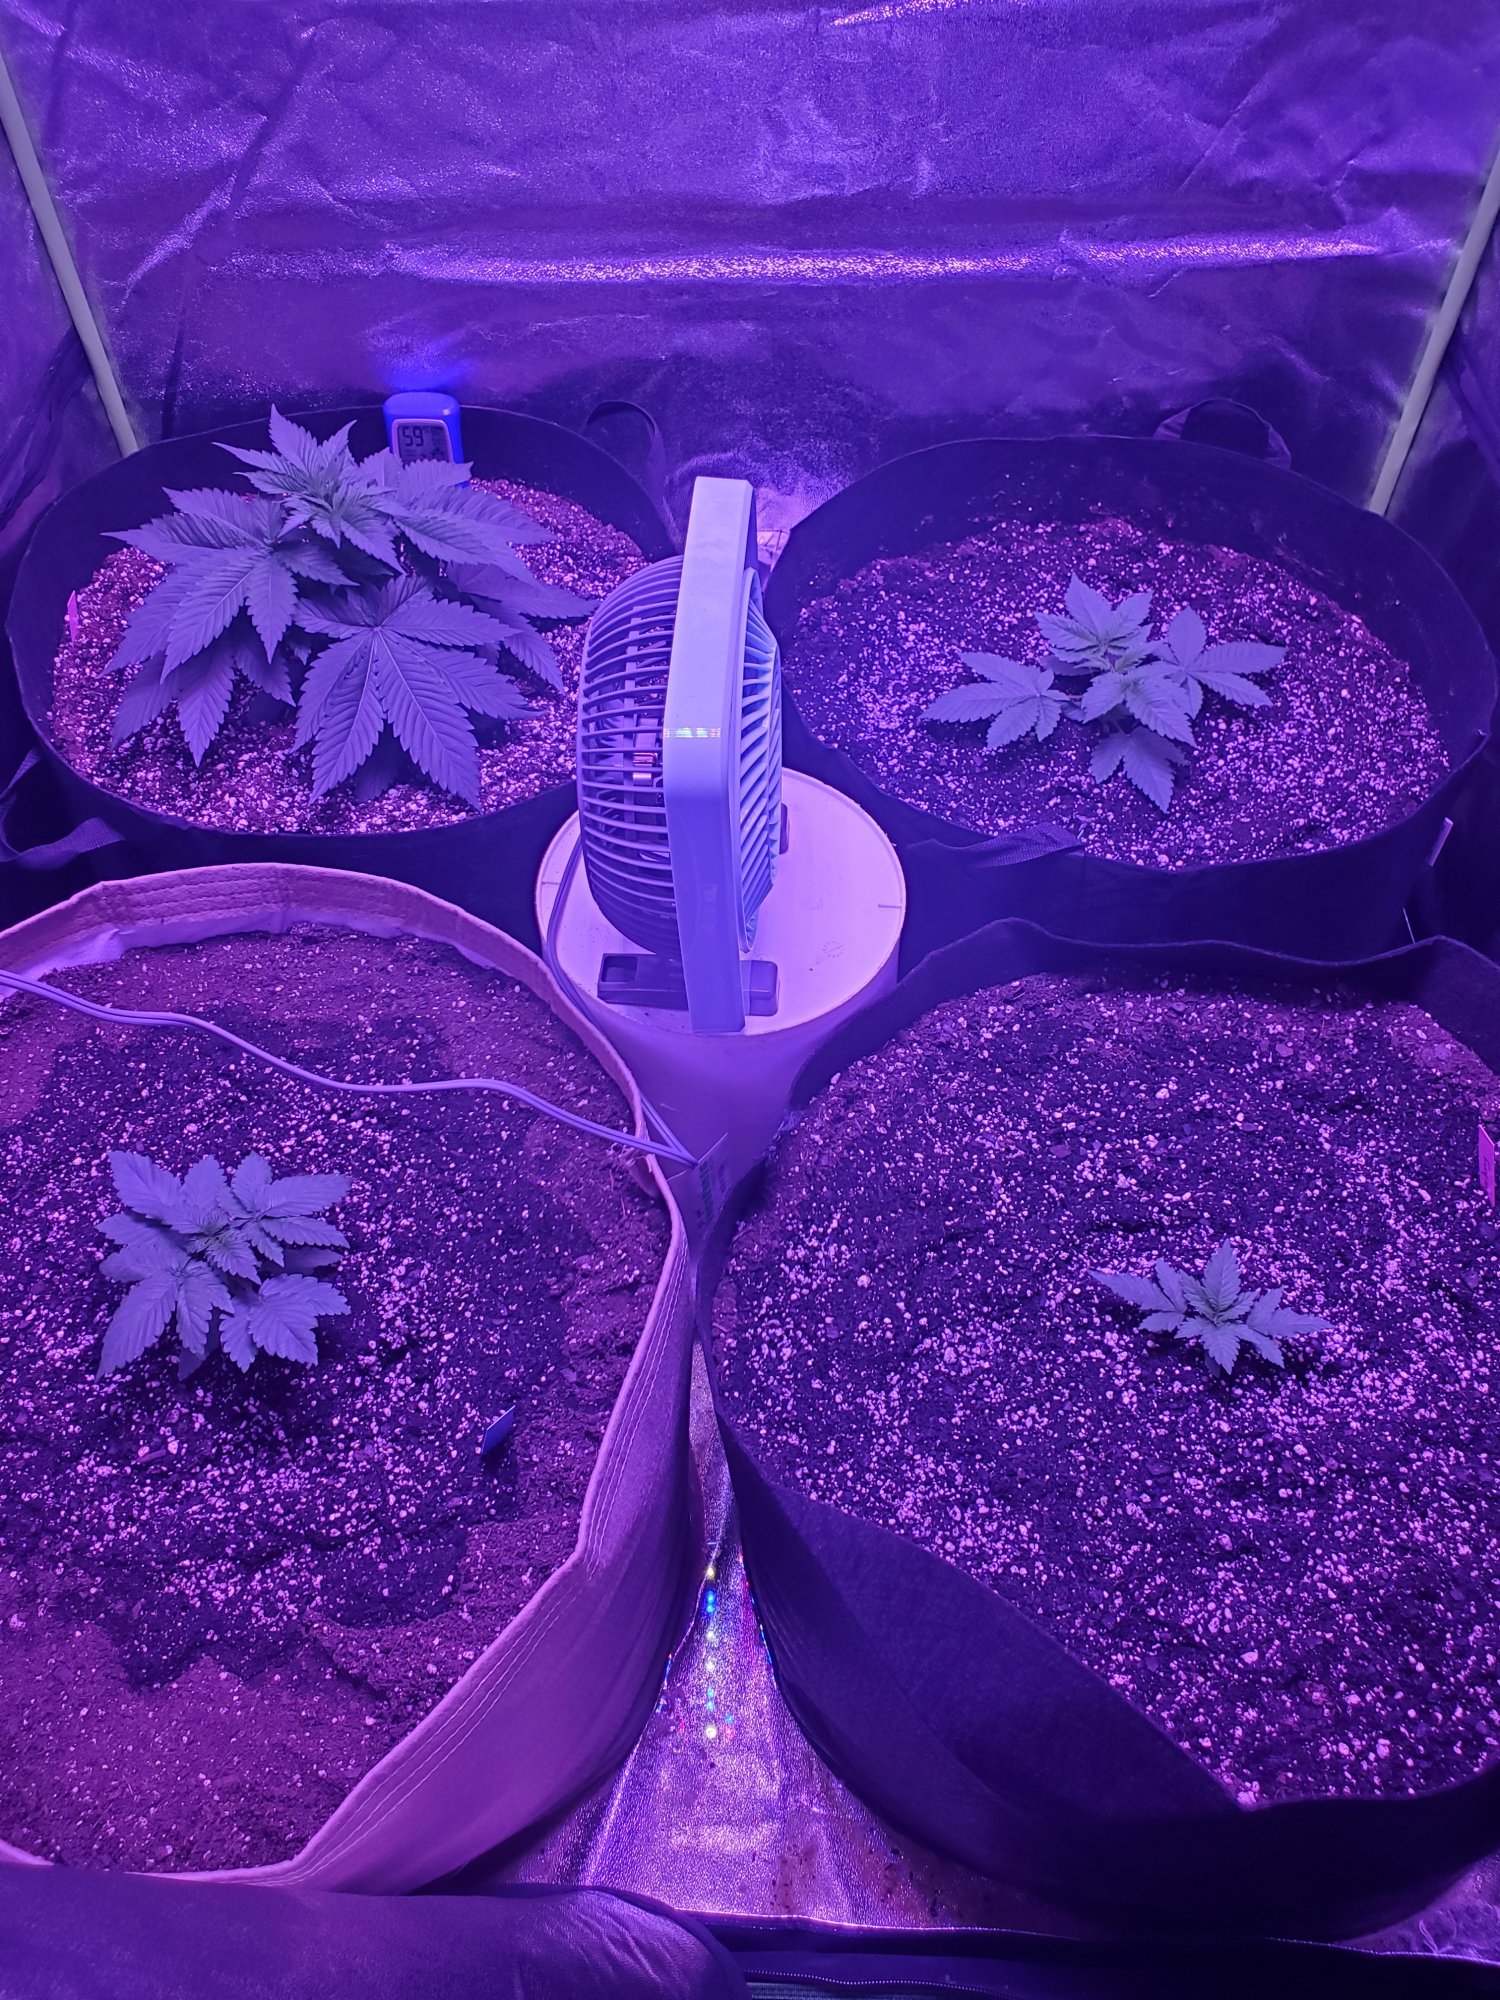 First indoor grow